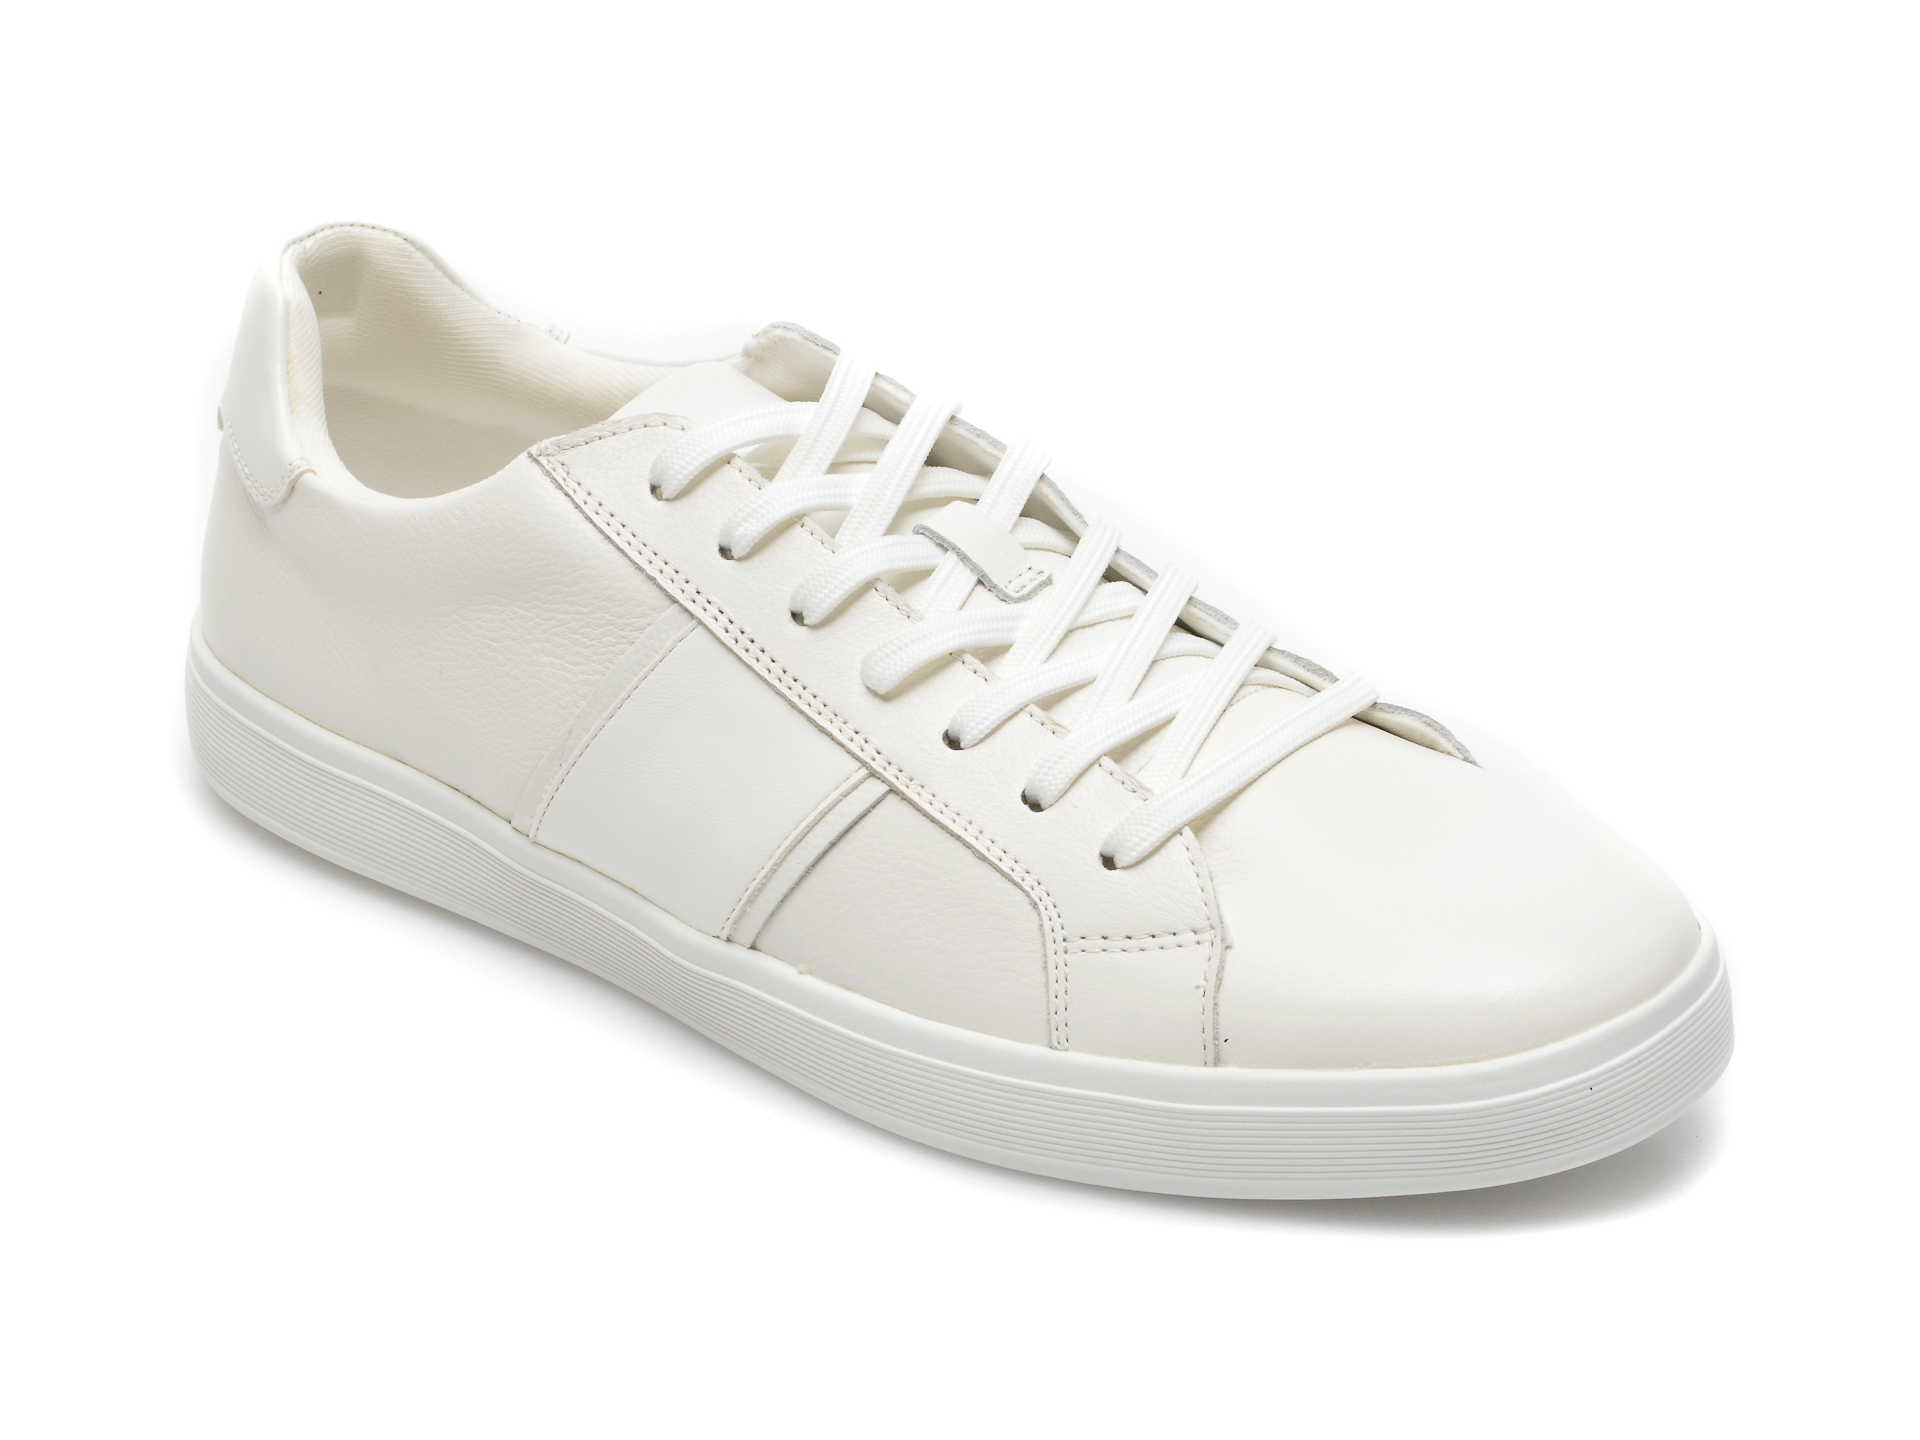 Pantofi sport ALDO albi, 13092409, din piele naturala